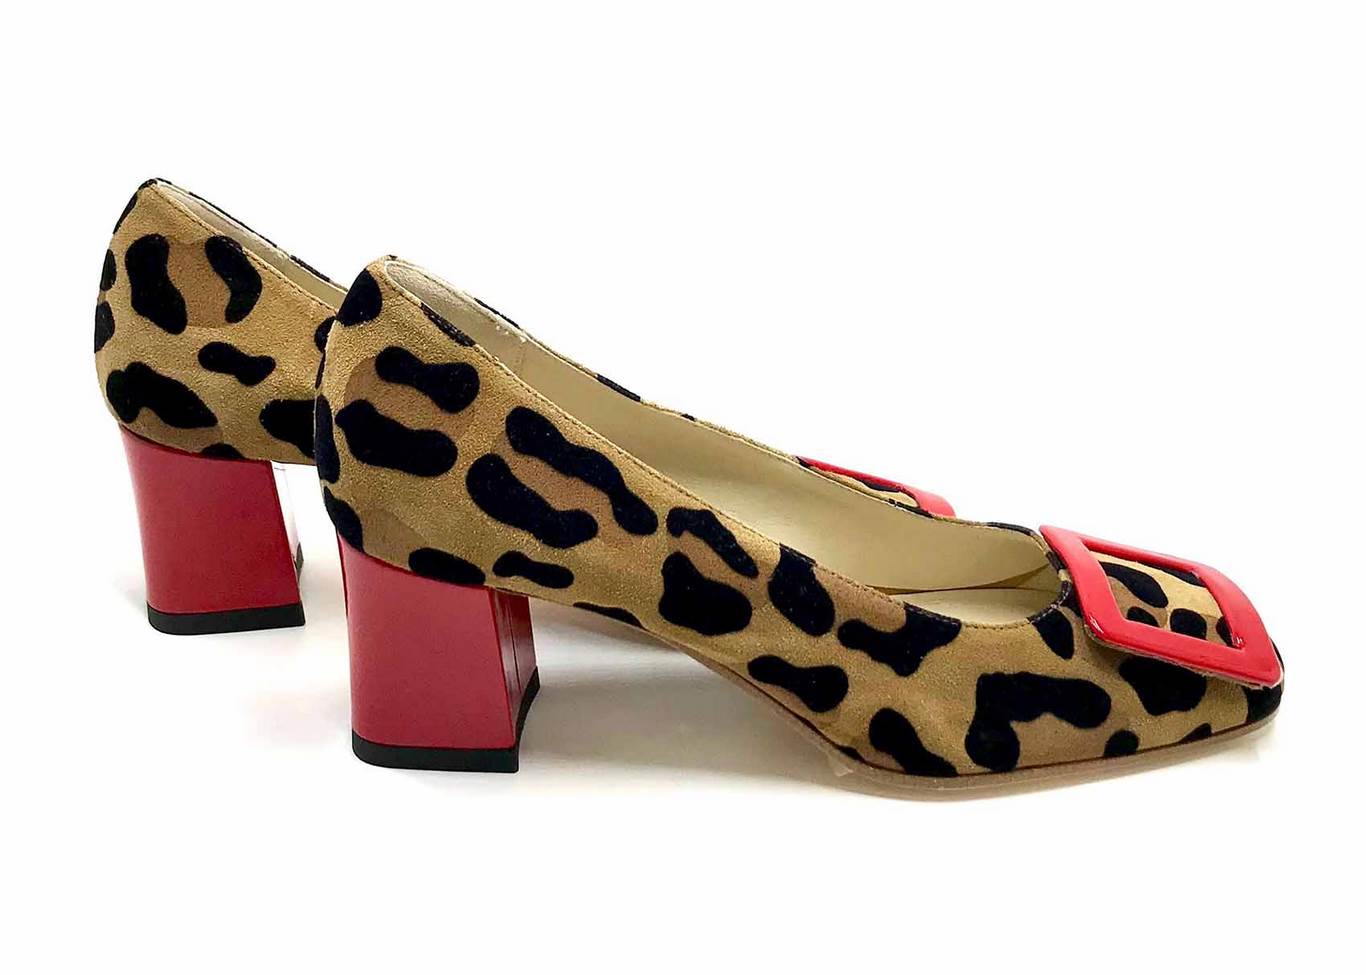 Décolleté Heel 5cm upper  in Suede silkscreened Animalier, heel and buckle in patent Red